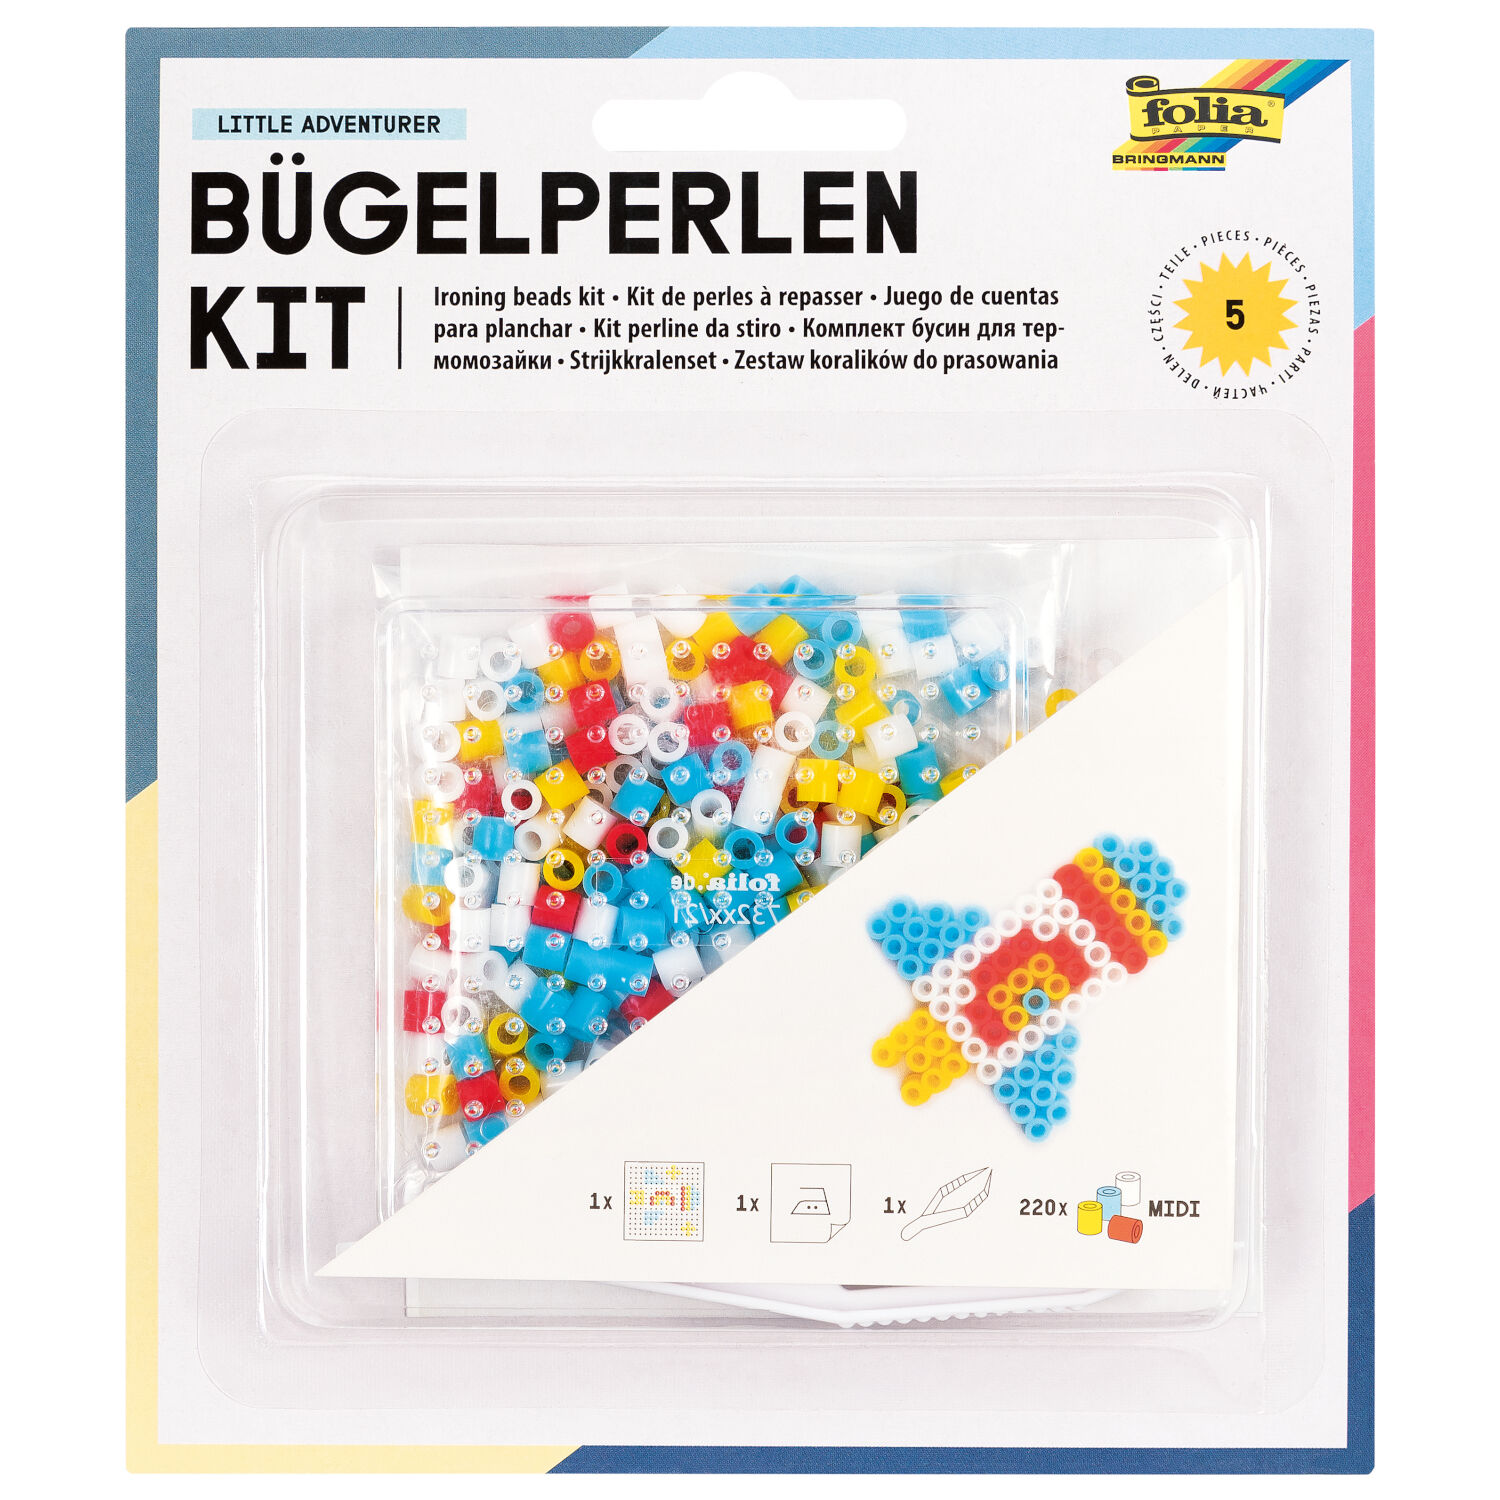 Bgelperlen Starter-Set, KIDS (Quadrat)